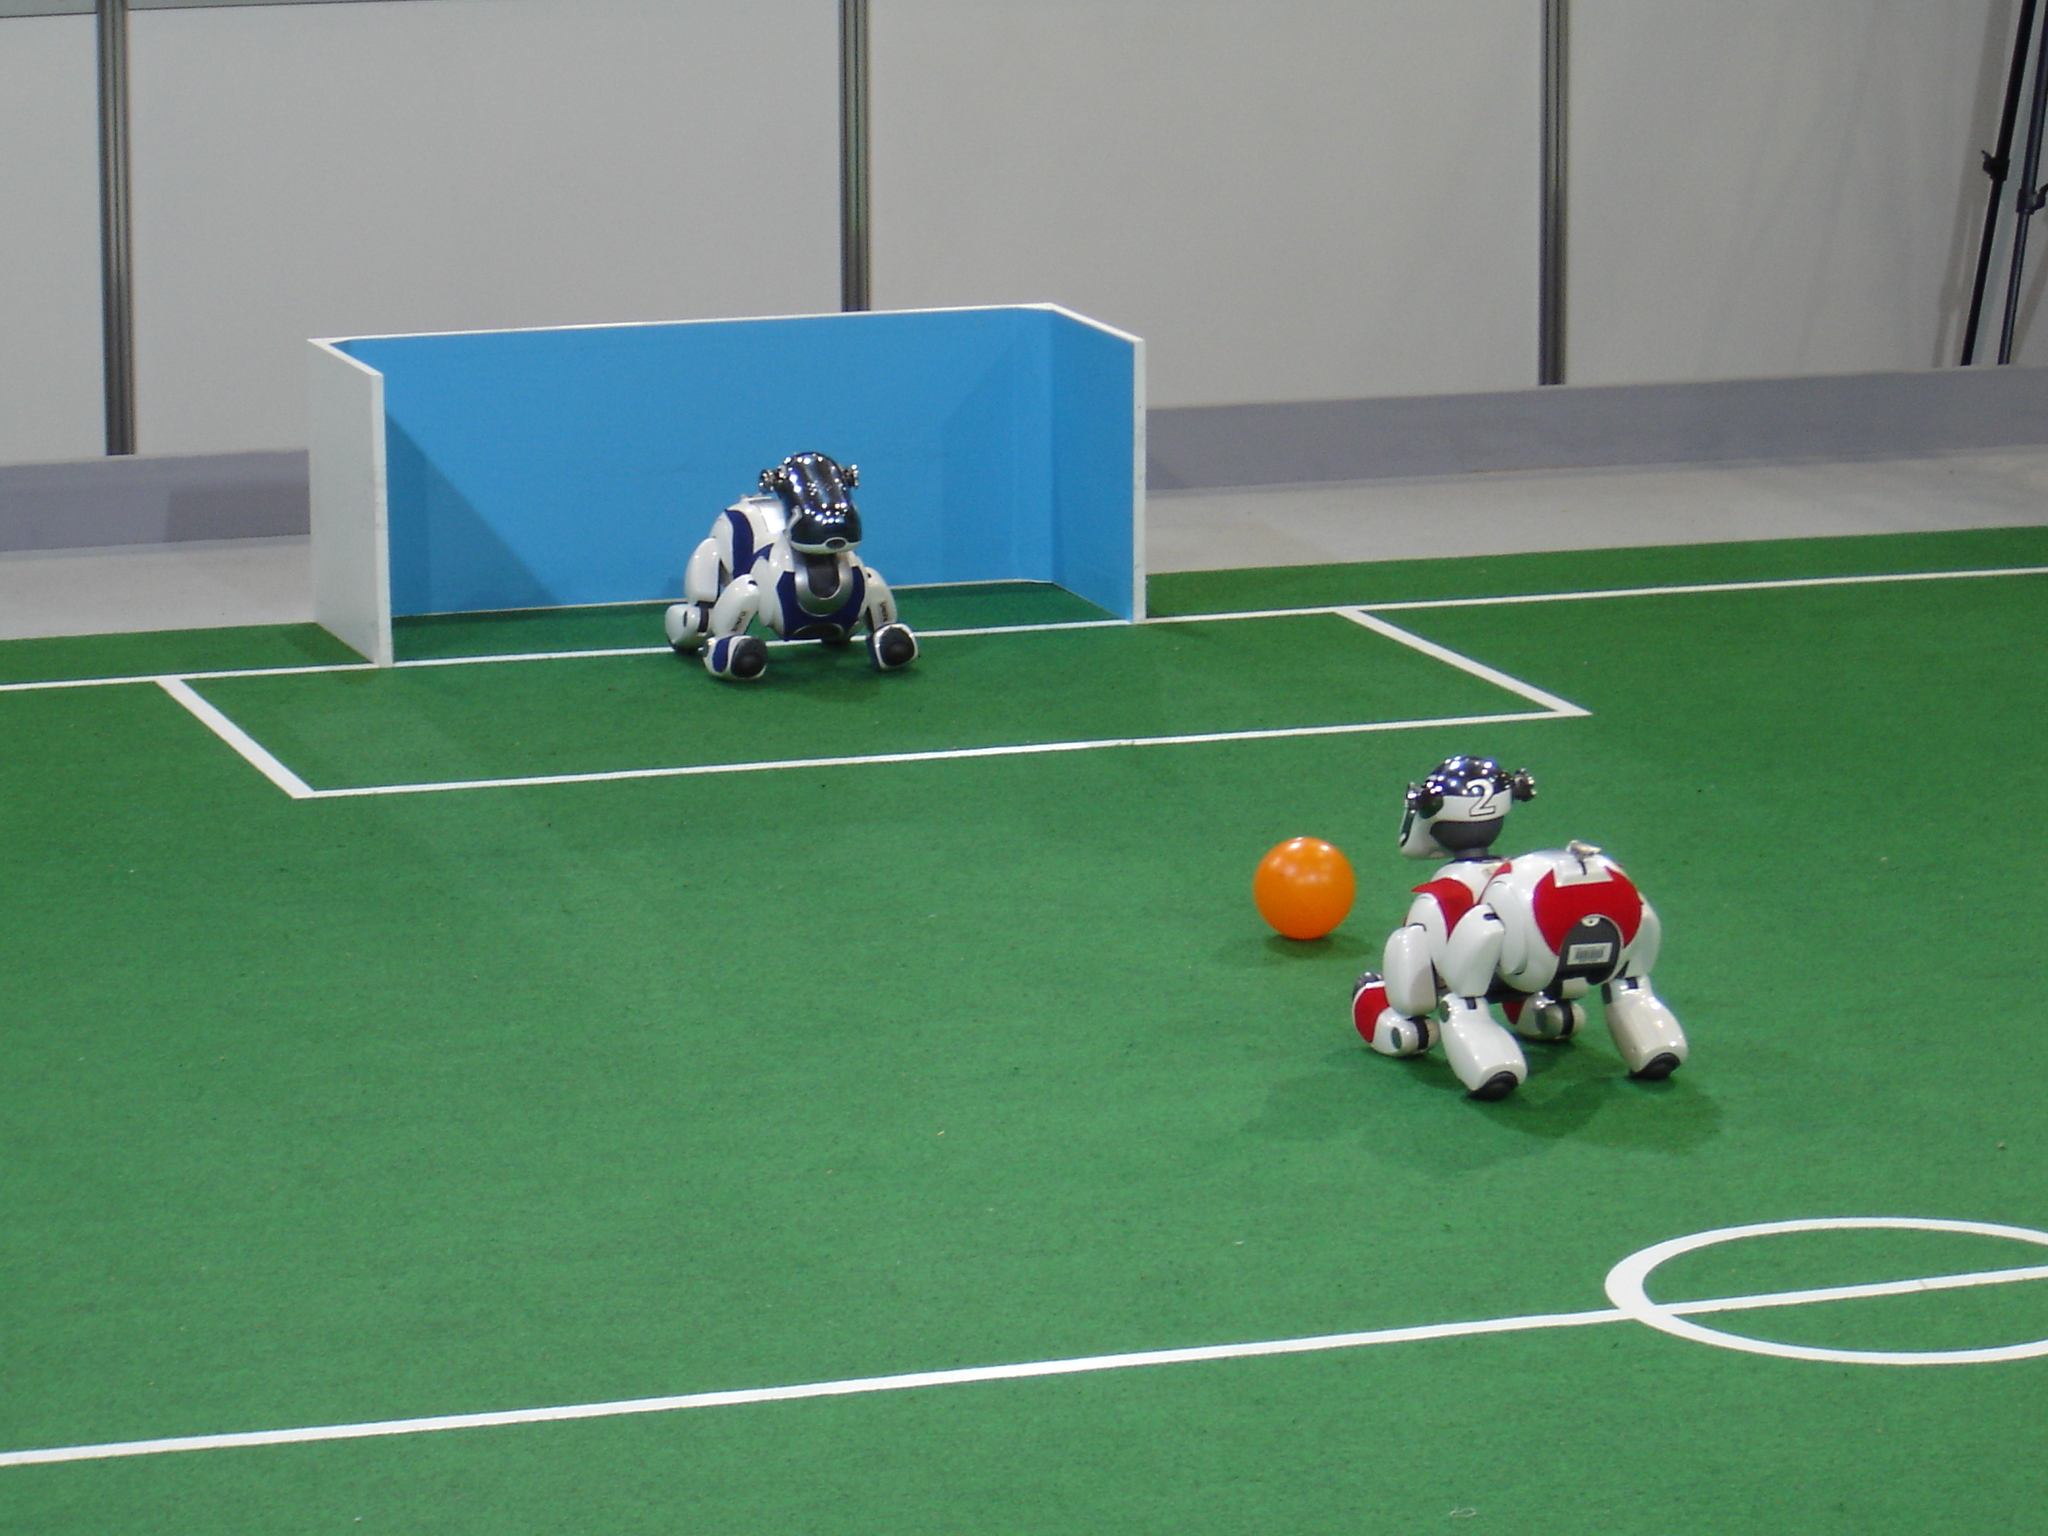 [Sondage] Préférez-vous regarder un match de foot joué par des robots ou des humains ?